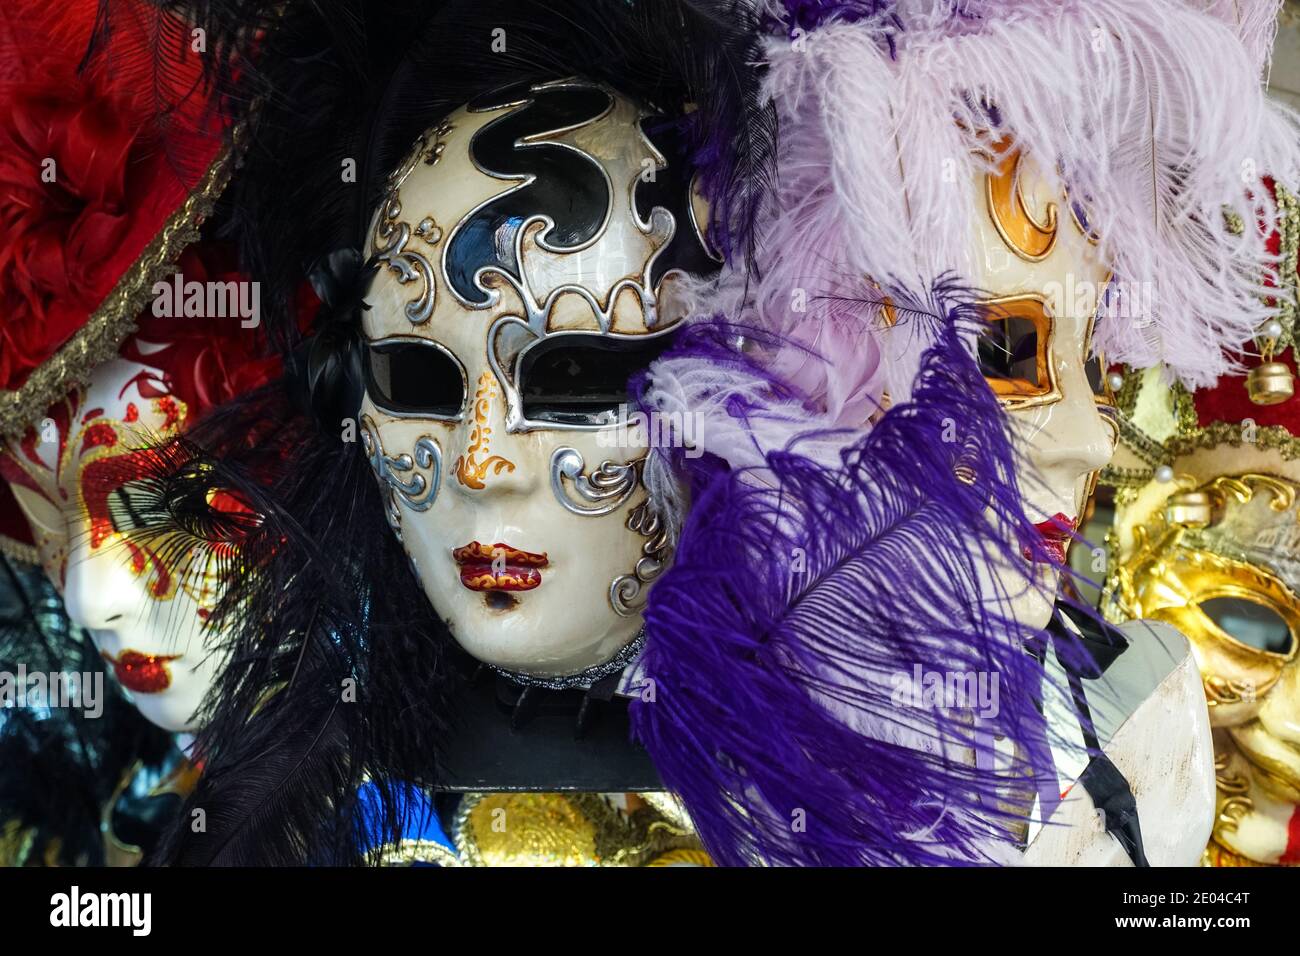 Masque de carnaval exposé dans la boutique de souvenirs de Venise pendant le Carnaval de Venise, Italie Banque D'Images